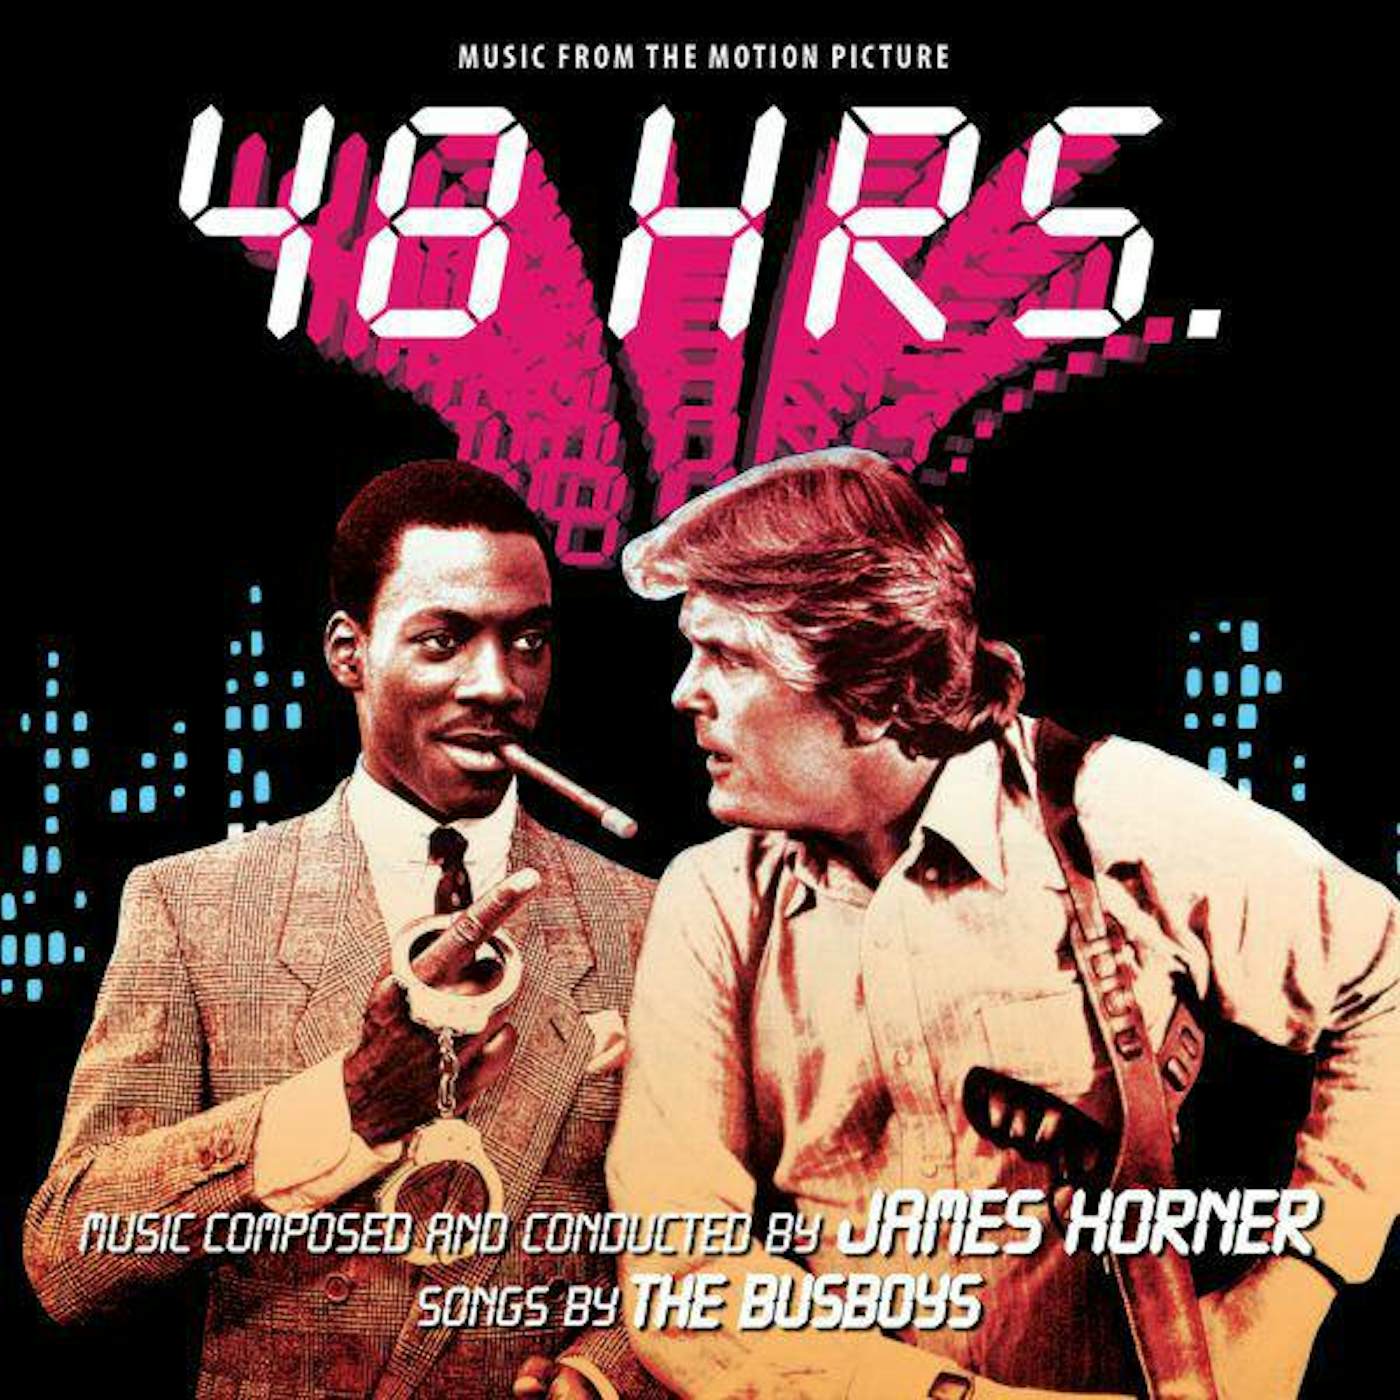 James Horner 48 HRS / Original Soundtrack CD